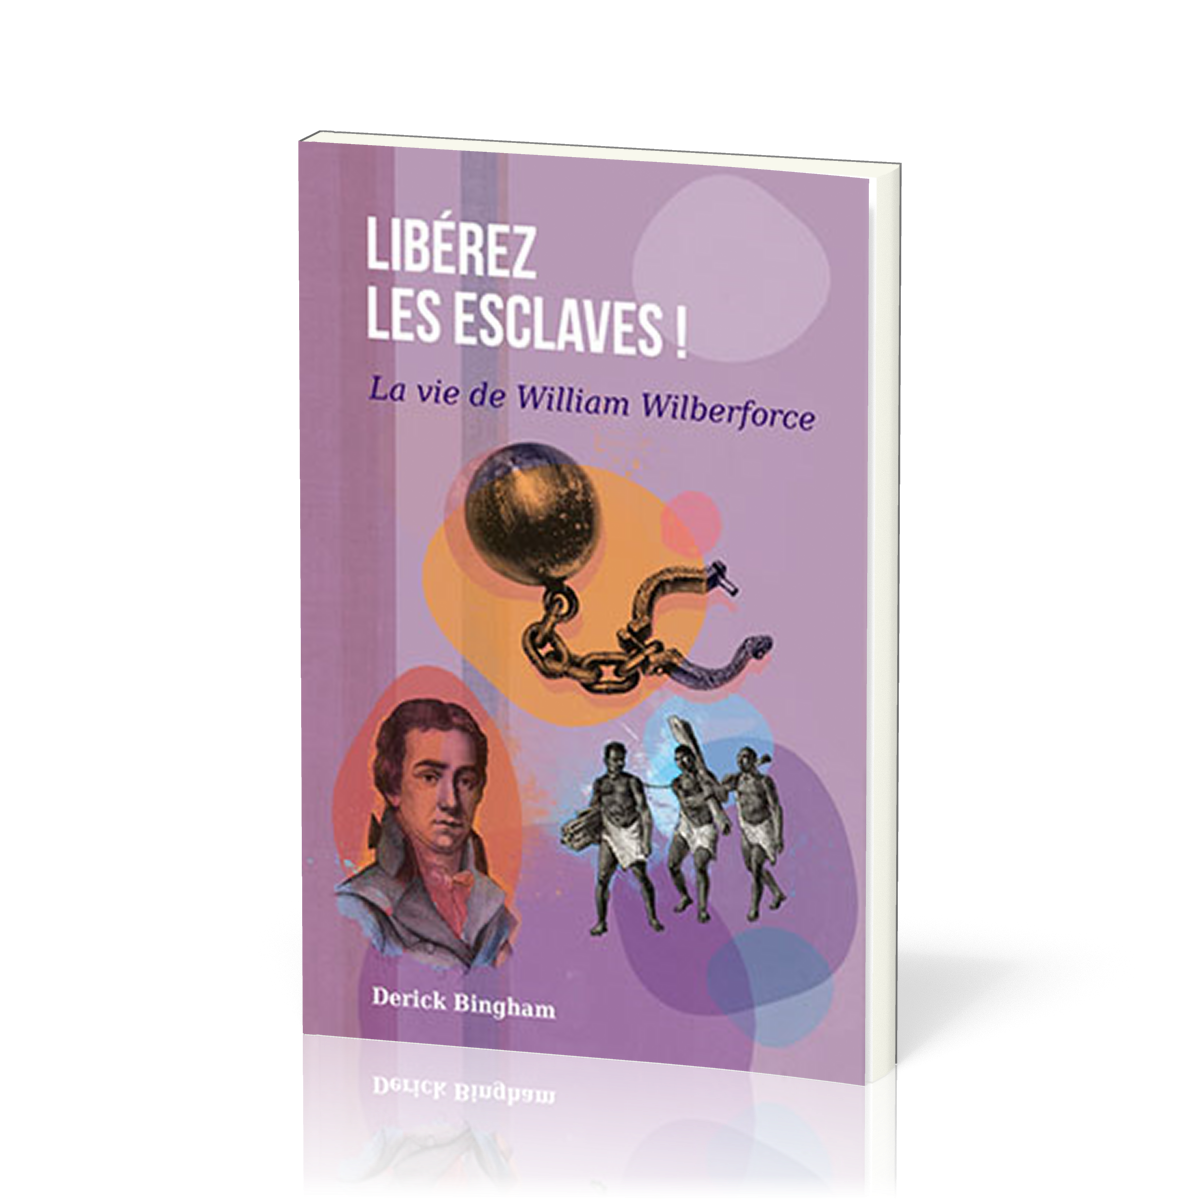 Libérez les esclaves - La vie de William Wilberforce